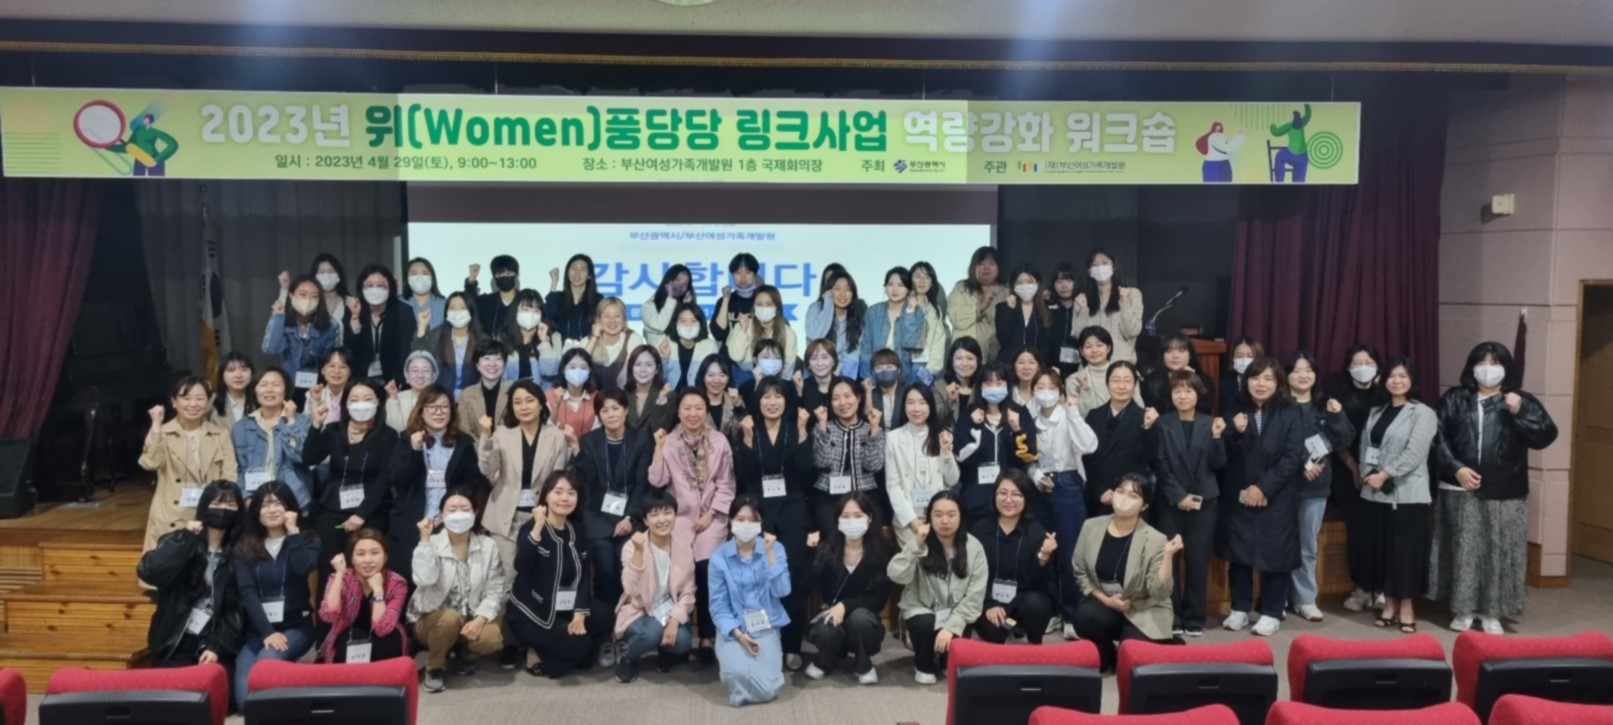 2023년 위(Women)풍당당 링크사업 역량강화 워크숍 단체사진